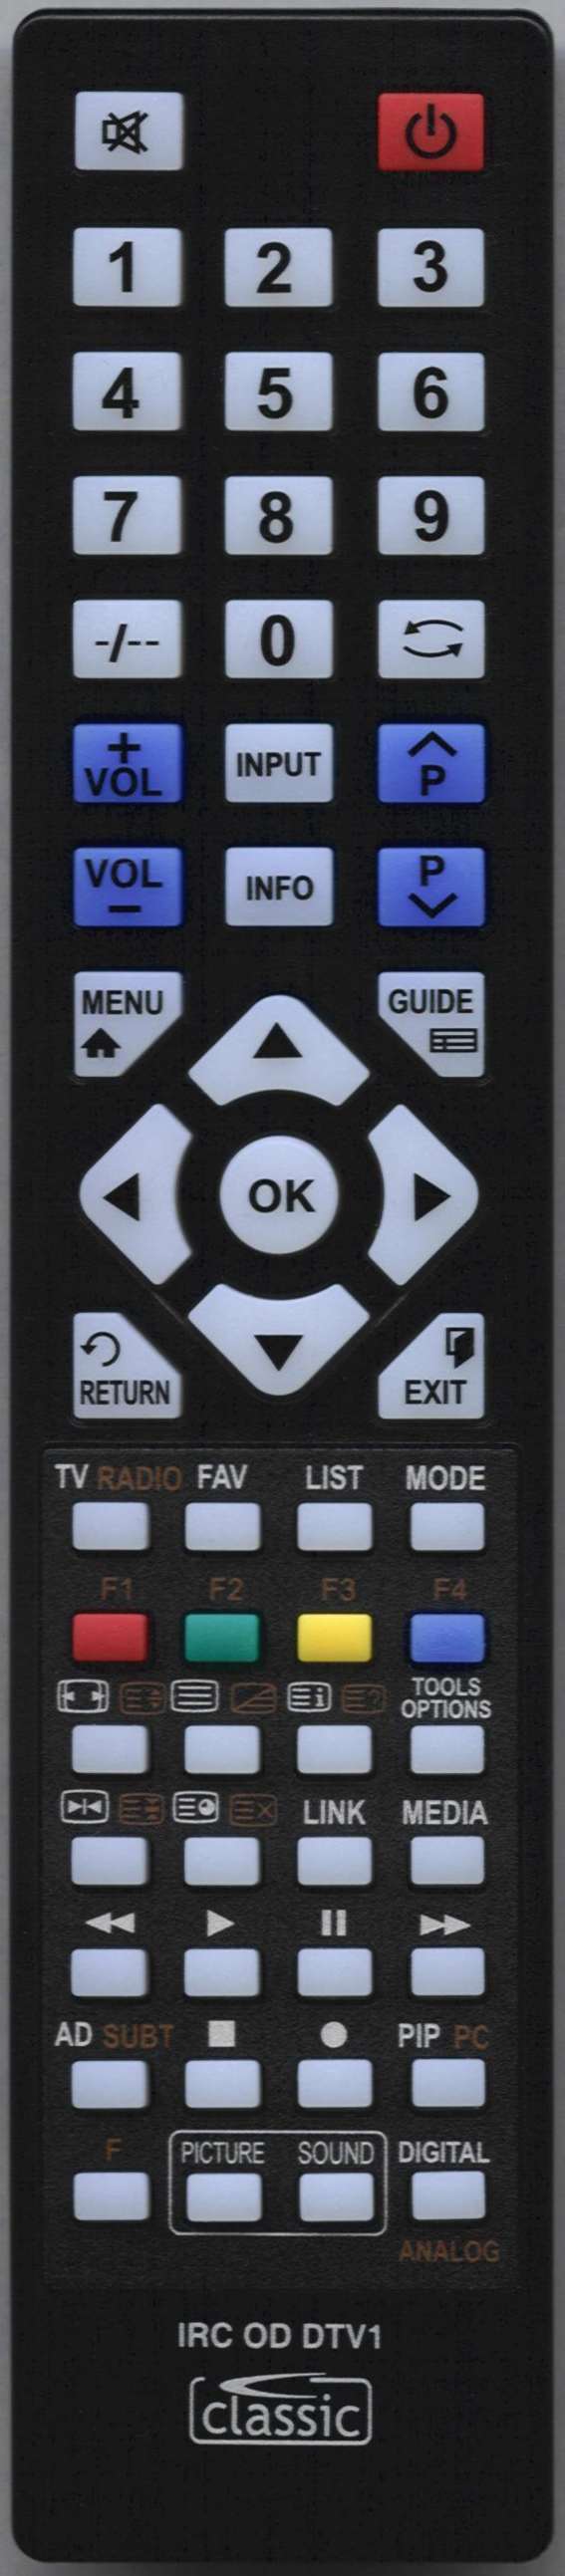 SEIKI SE43FO02UK Remote Control